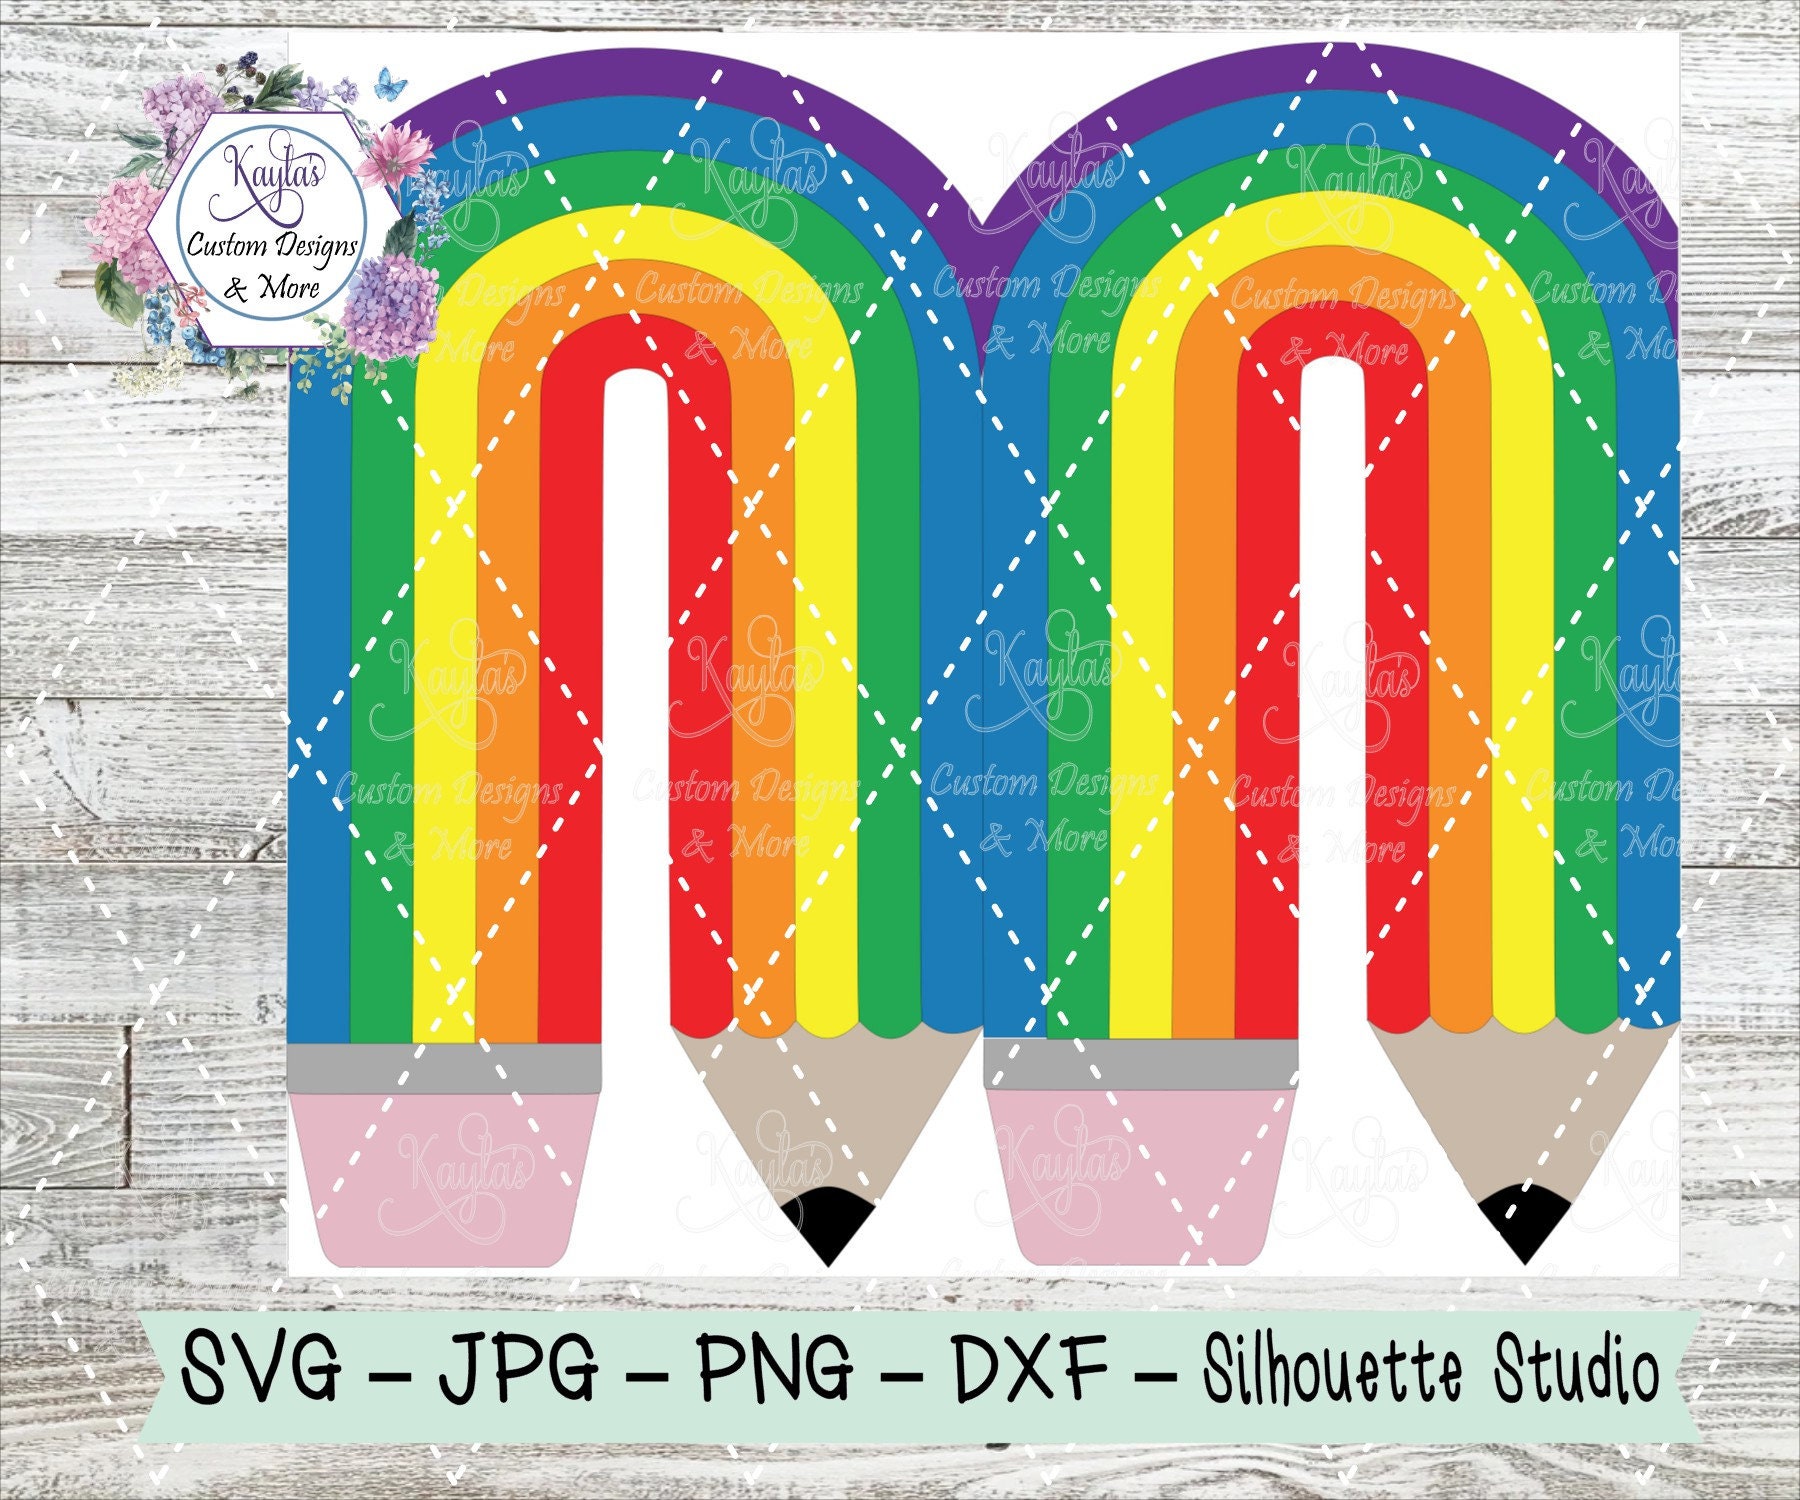 Colored Pencils, glitter colored pencils, rainbow pencils, clipart clip art  instant digital download. 80 digital images, graphics